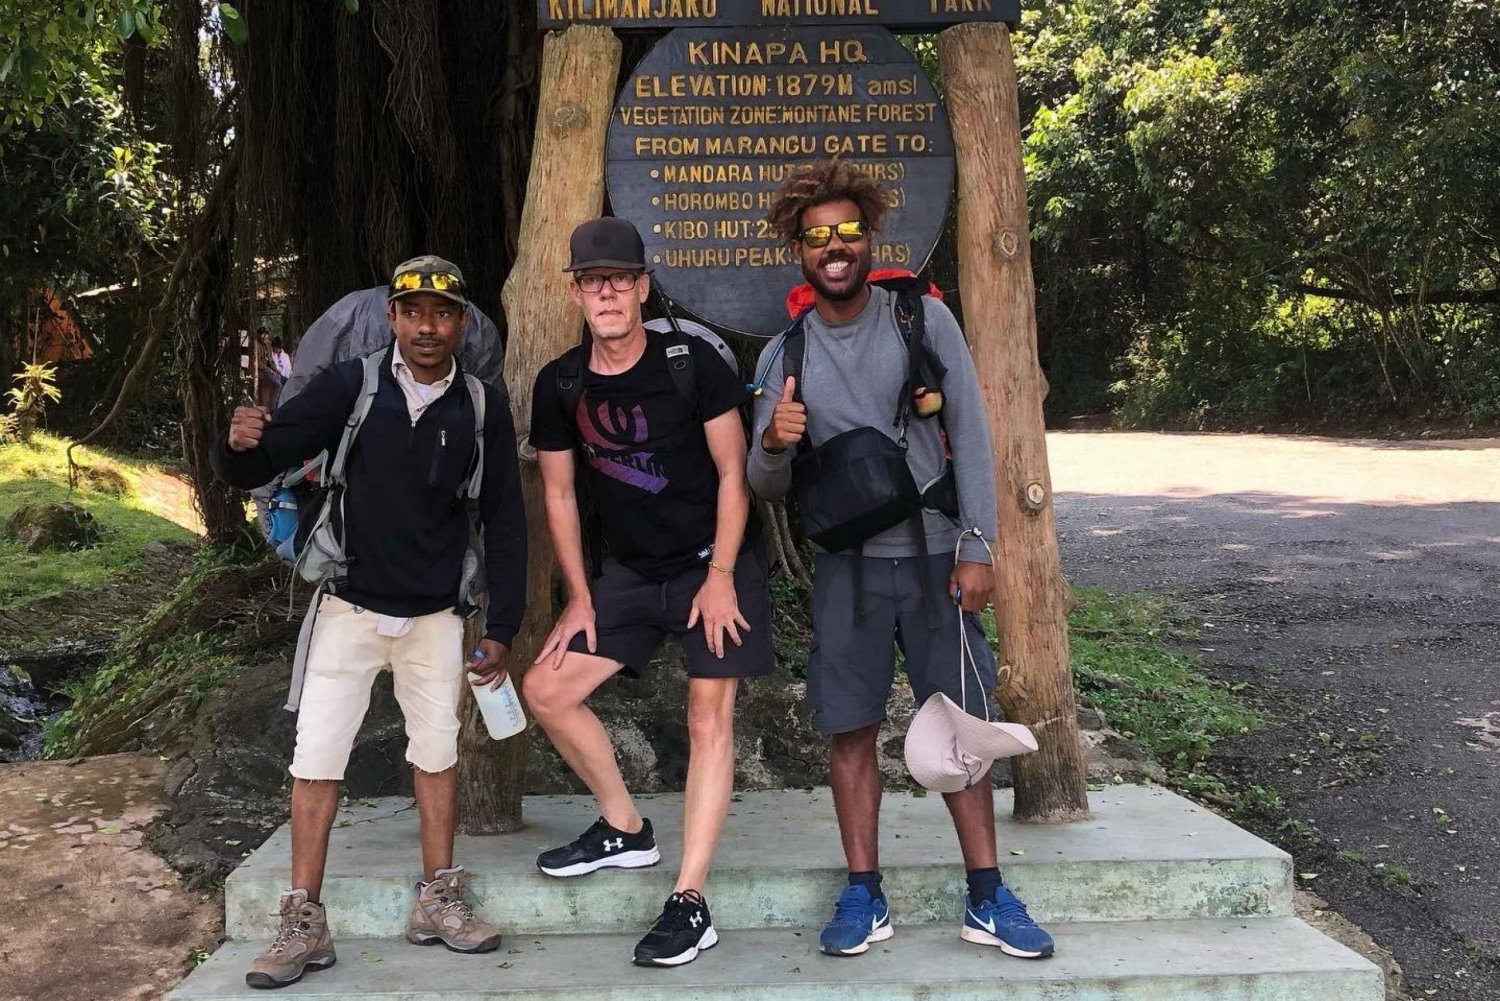 Mount Kilimanjaro Climbing in Tanzania Full-Day Trip